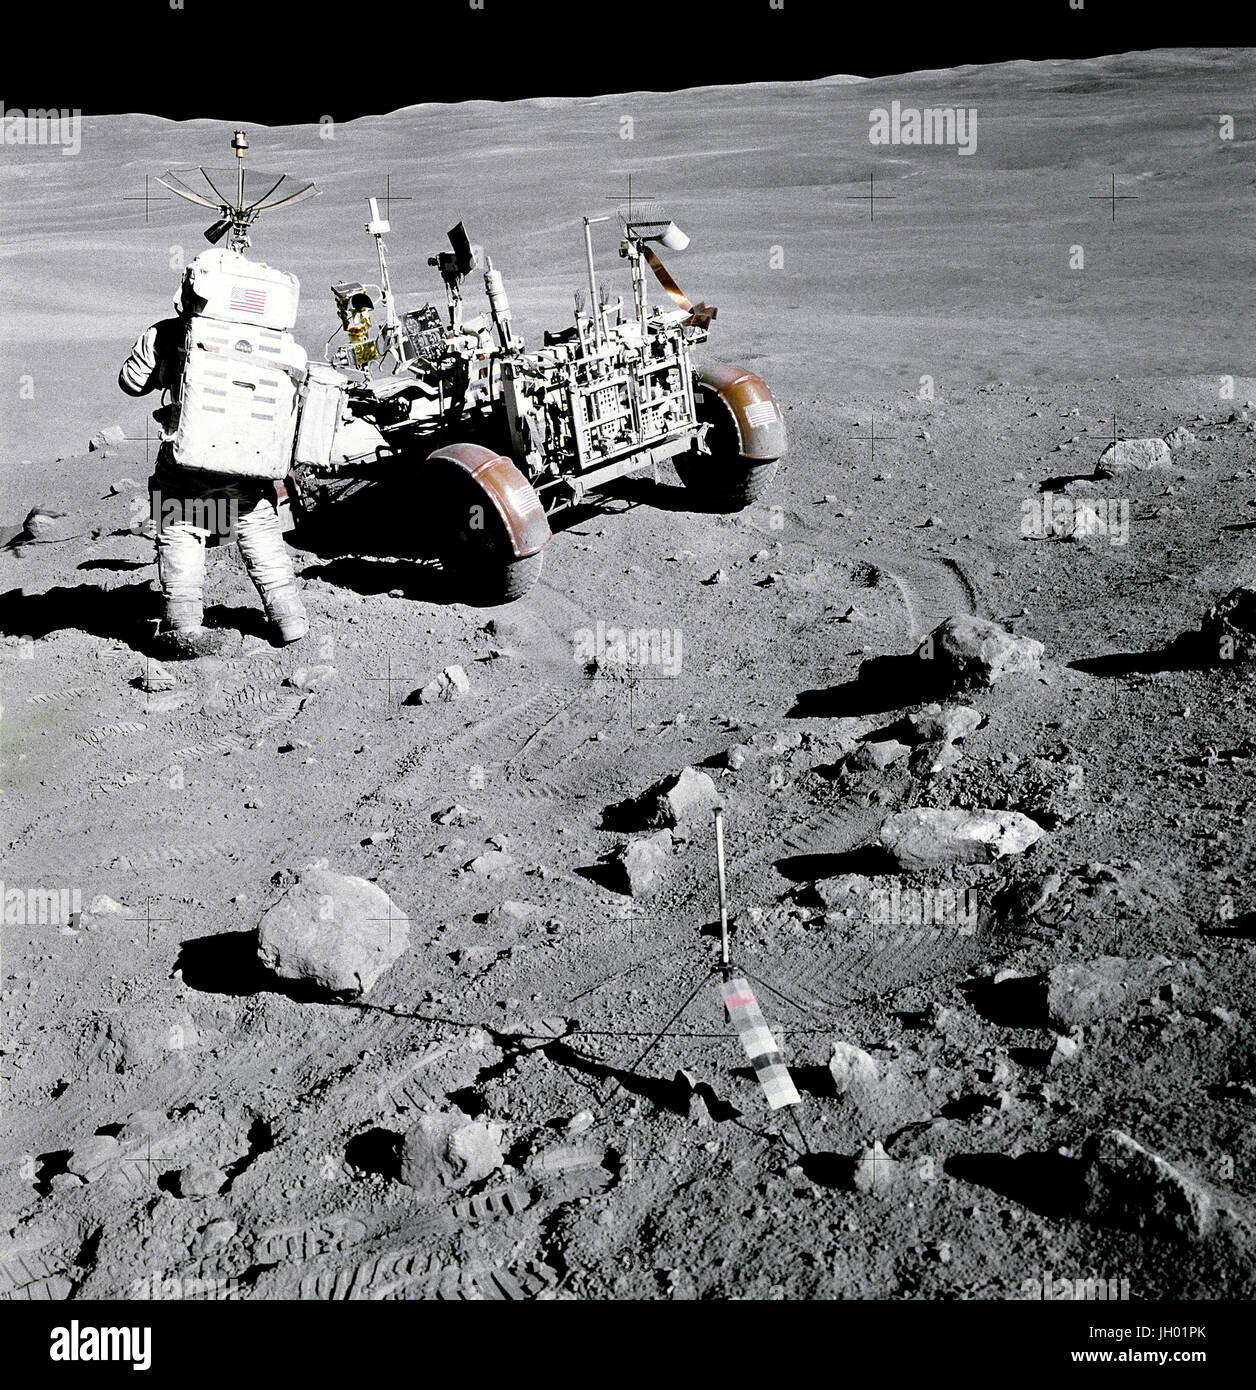 Herzog auf die Descartes. Apollo 16 Astronaut Charles M. Duke Jr., Pilot der Mondlandefähre "Orion", steht in der Nähe der Rover, Lunar Roving Vehicle (LRV) in der Station Nr. 4, in der Nähe von Stone Mountain, während die zweite Apollo 16 Extravehicular Activity (EVA-2) am Landeplatz Descartes. Lichtstrahlen aus Süden Ray-Krater sehen oben links. Gnomon, als fotografische Referenz dient zum lokalen vertikaler Sonnenwinkel, Graustufen-, und Mond zu etablieren, wird im Vordergrund Center bereitgestellt. Beachten Sie die Kantigkeit der Felsen in der Umgebung. NASA-Foto / John Young. Stockfoto